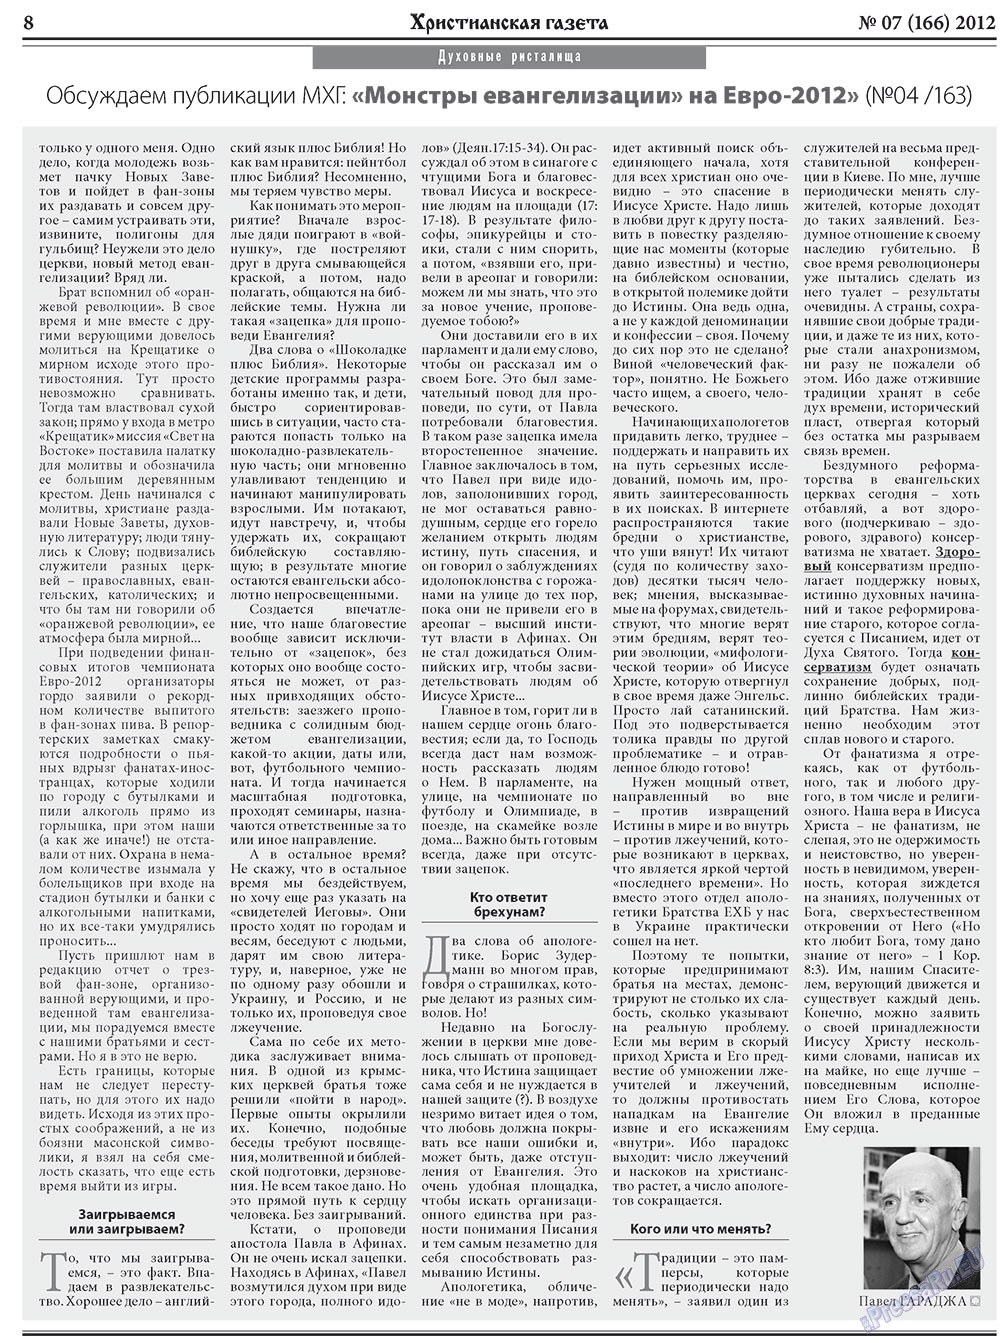 Христианская газета, газета. 2012 №7 стр.8